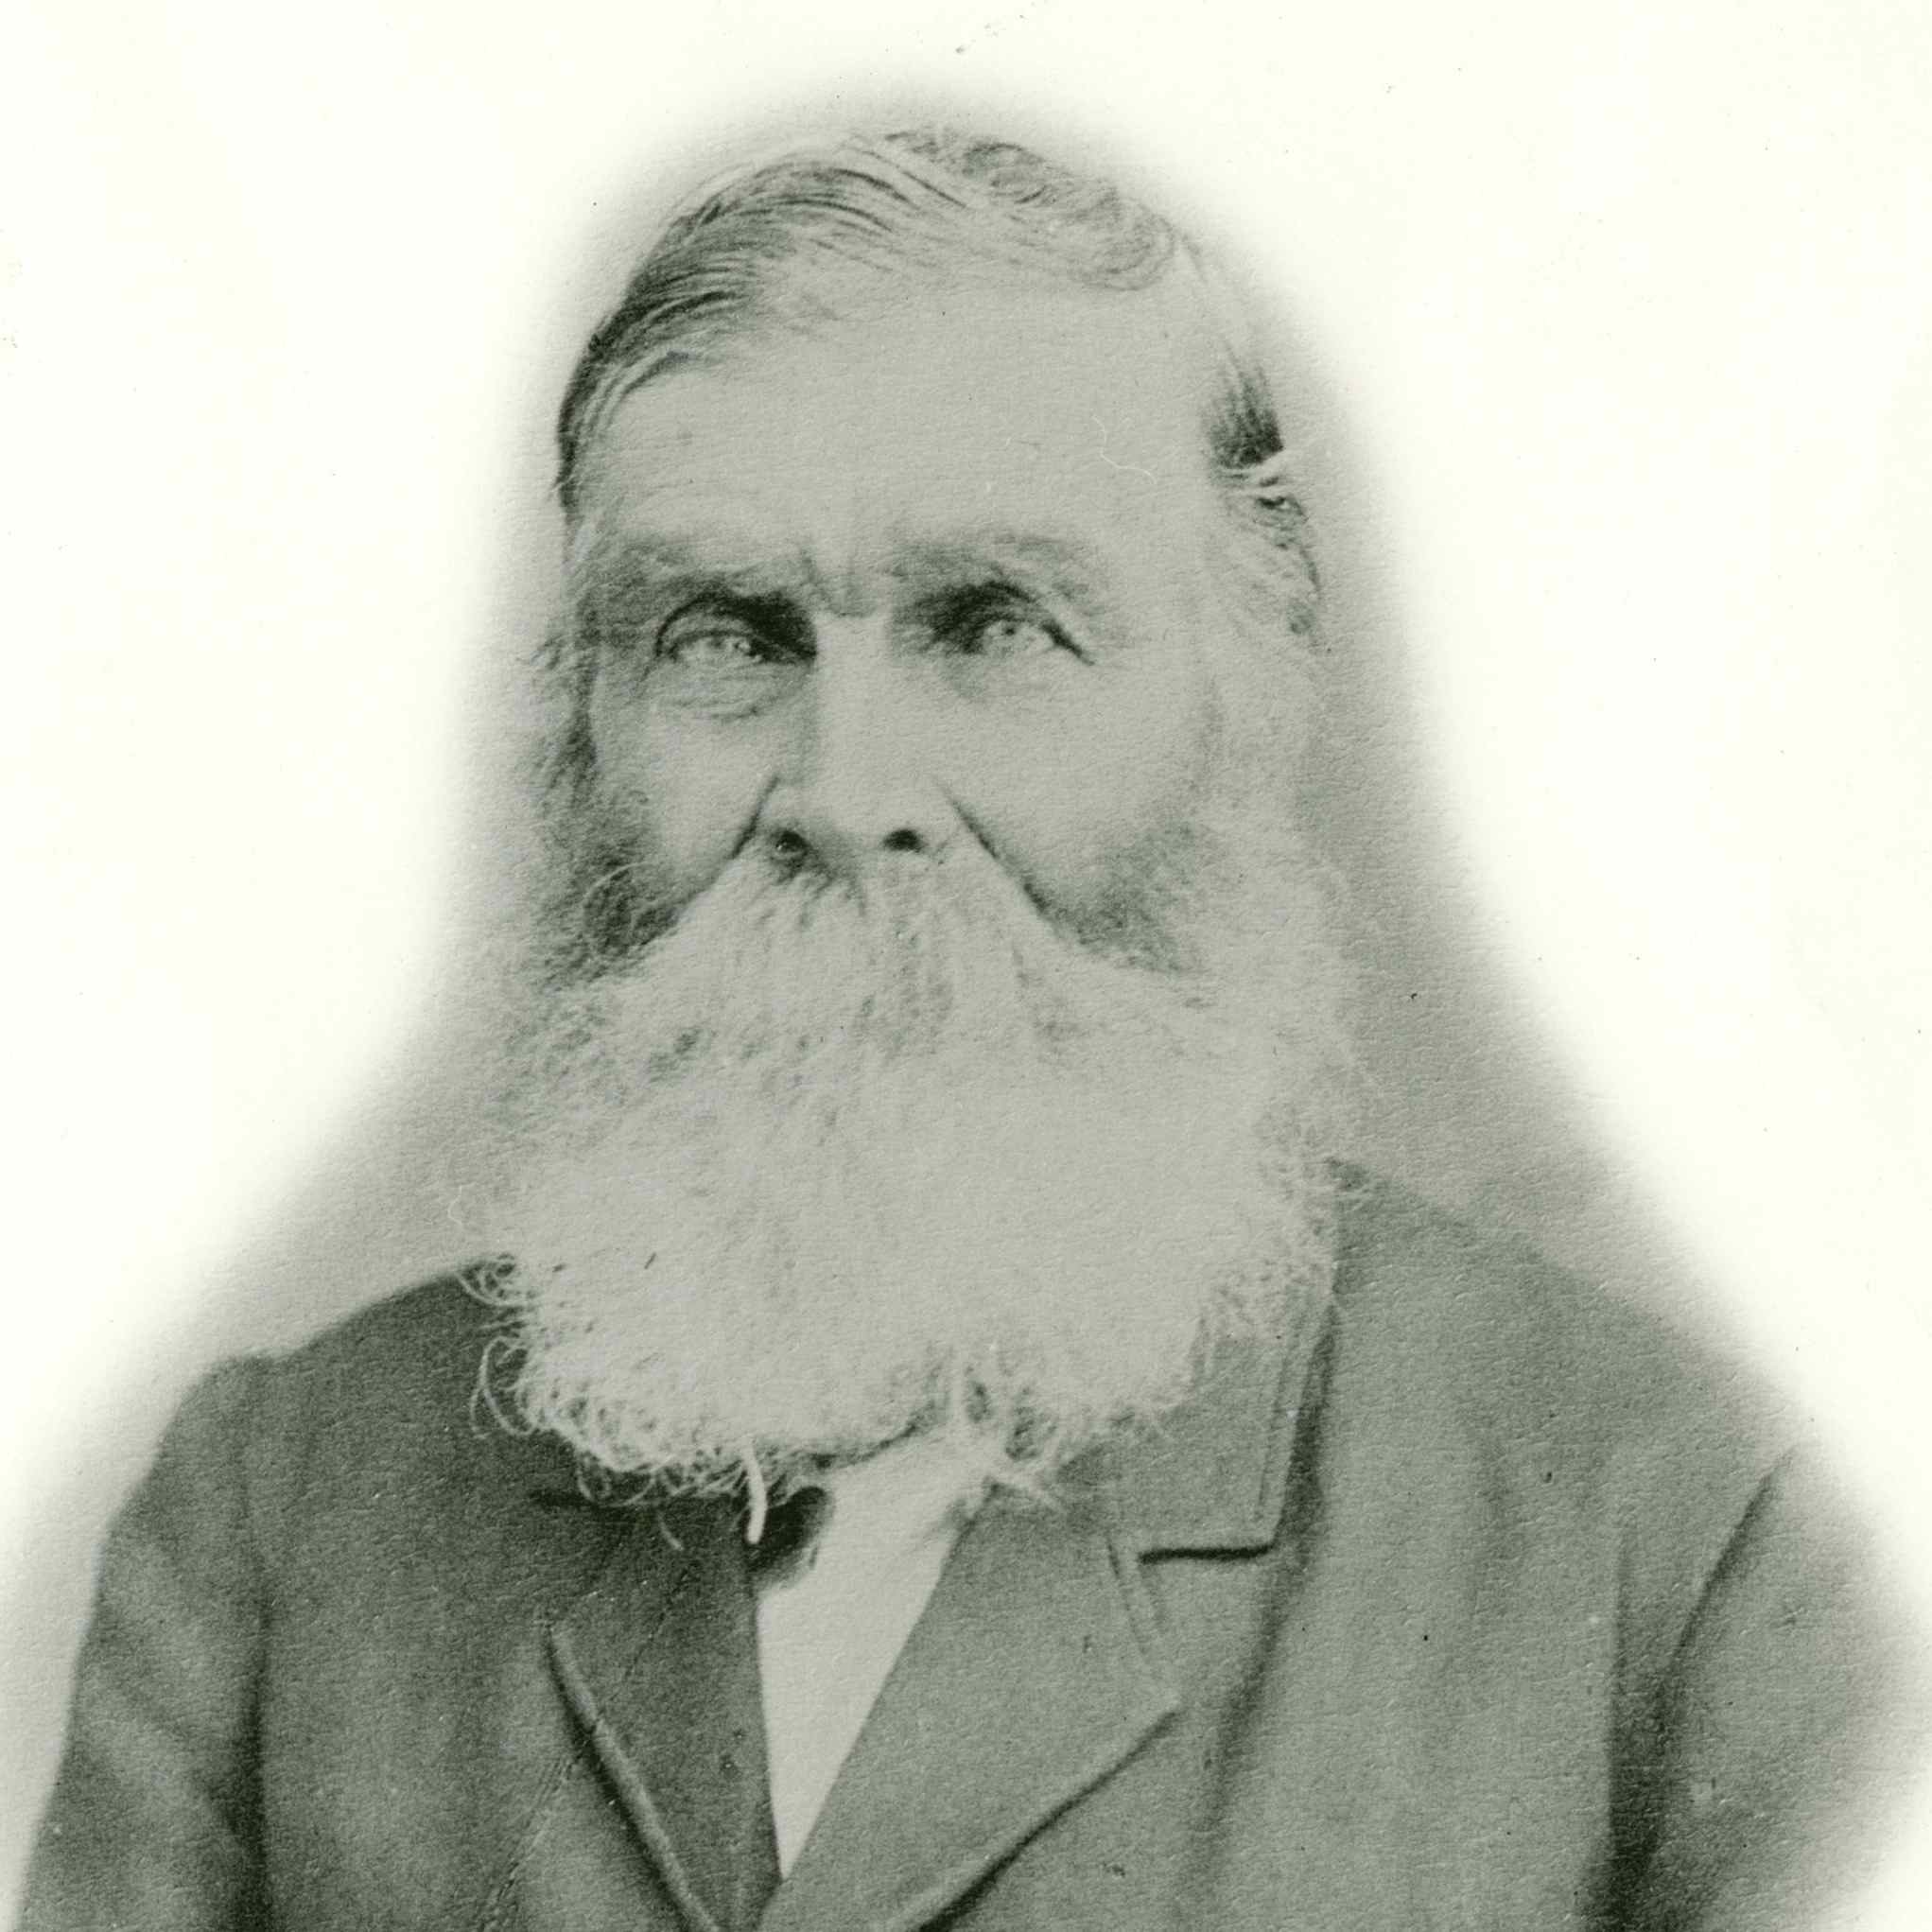 Daniel Wood (1800 - 1892)